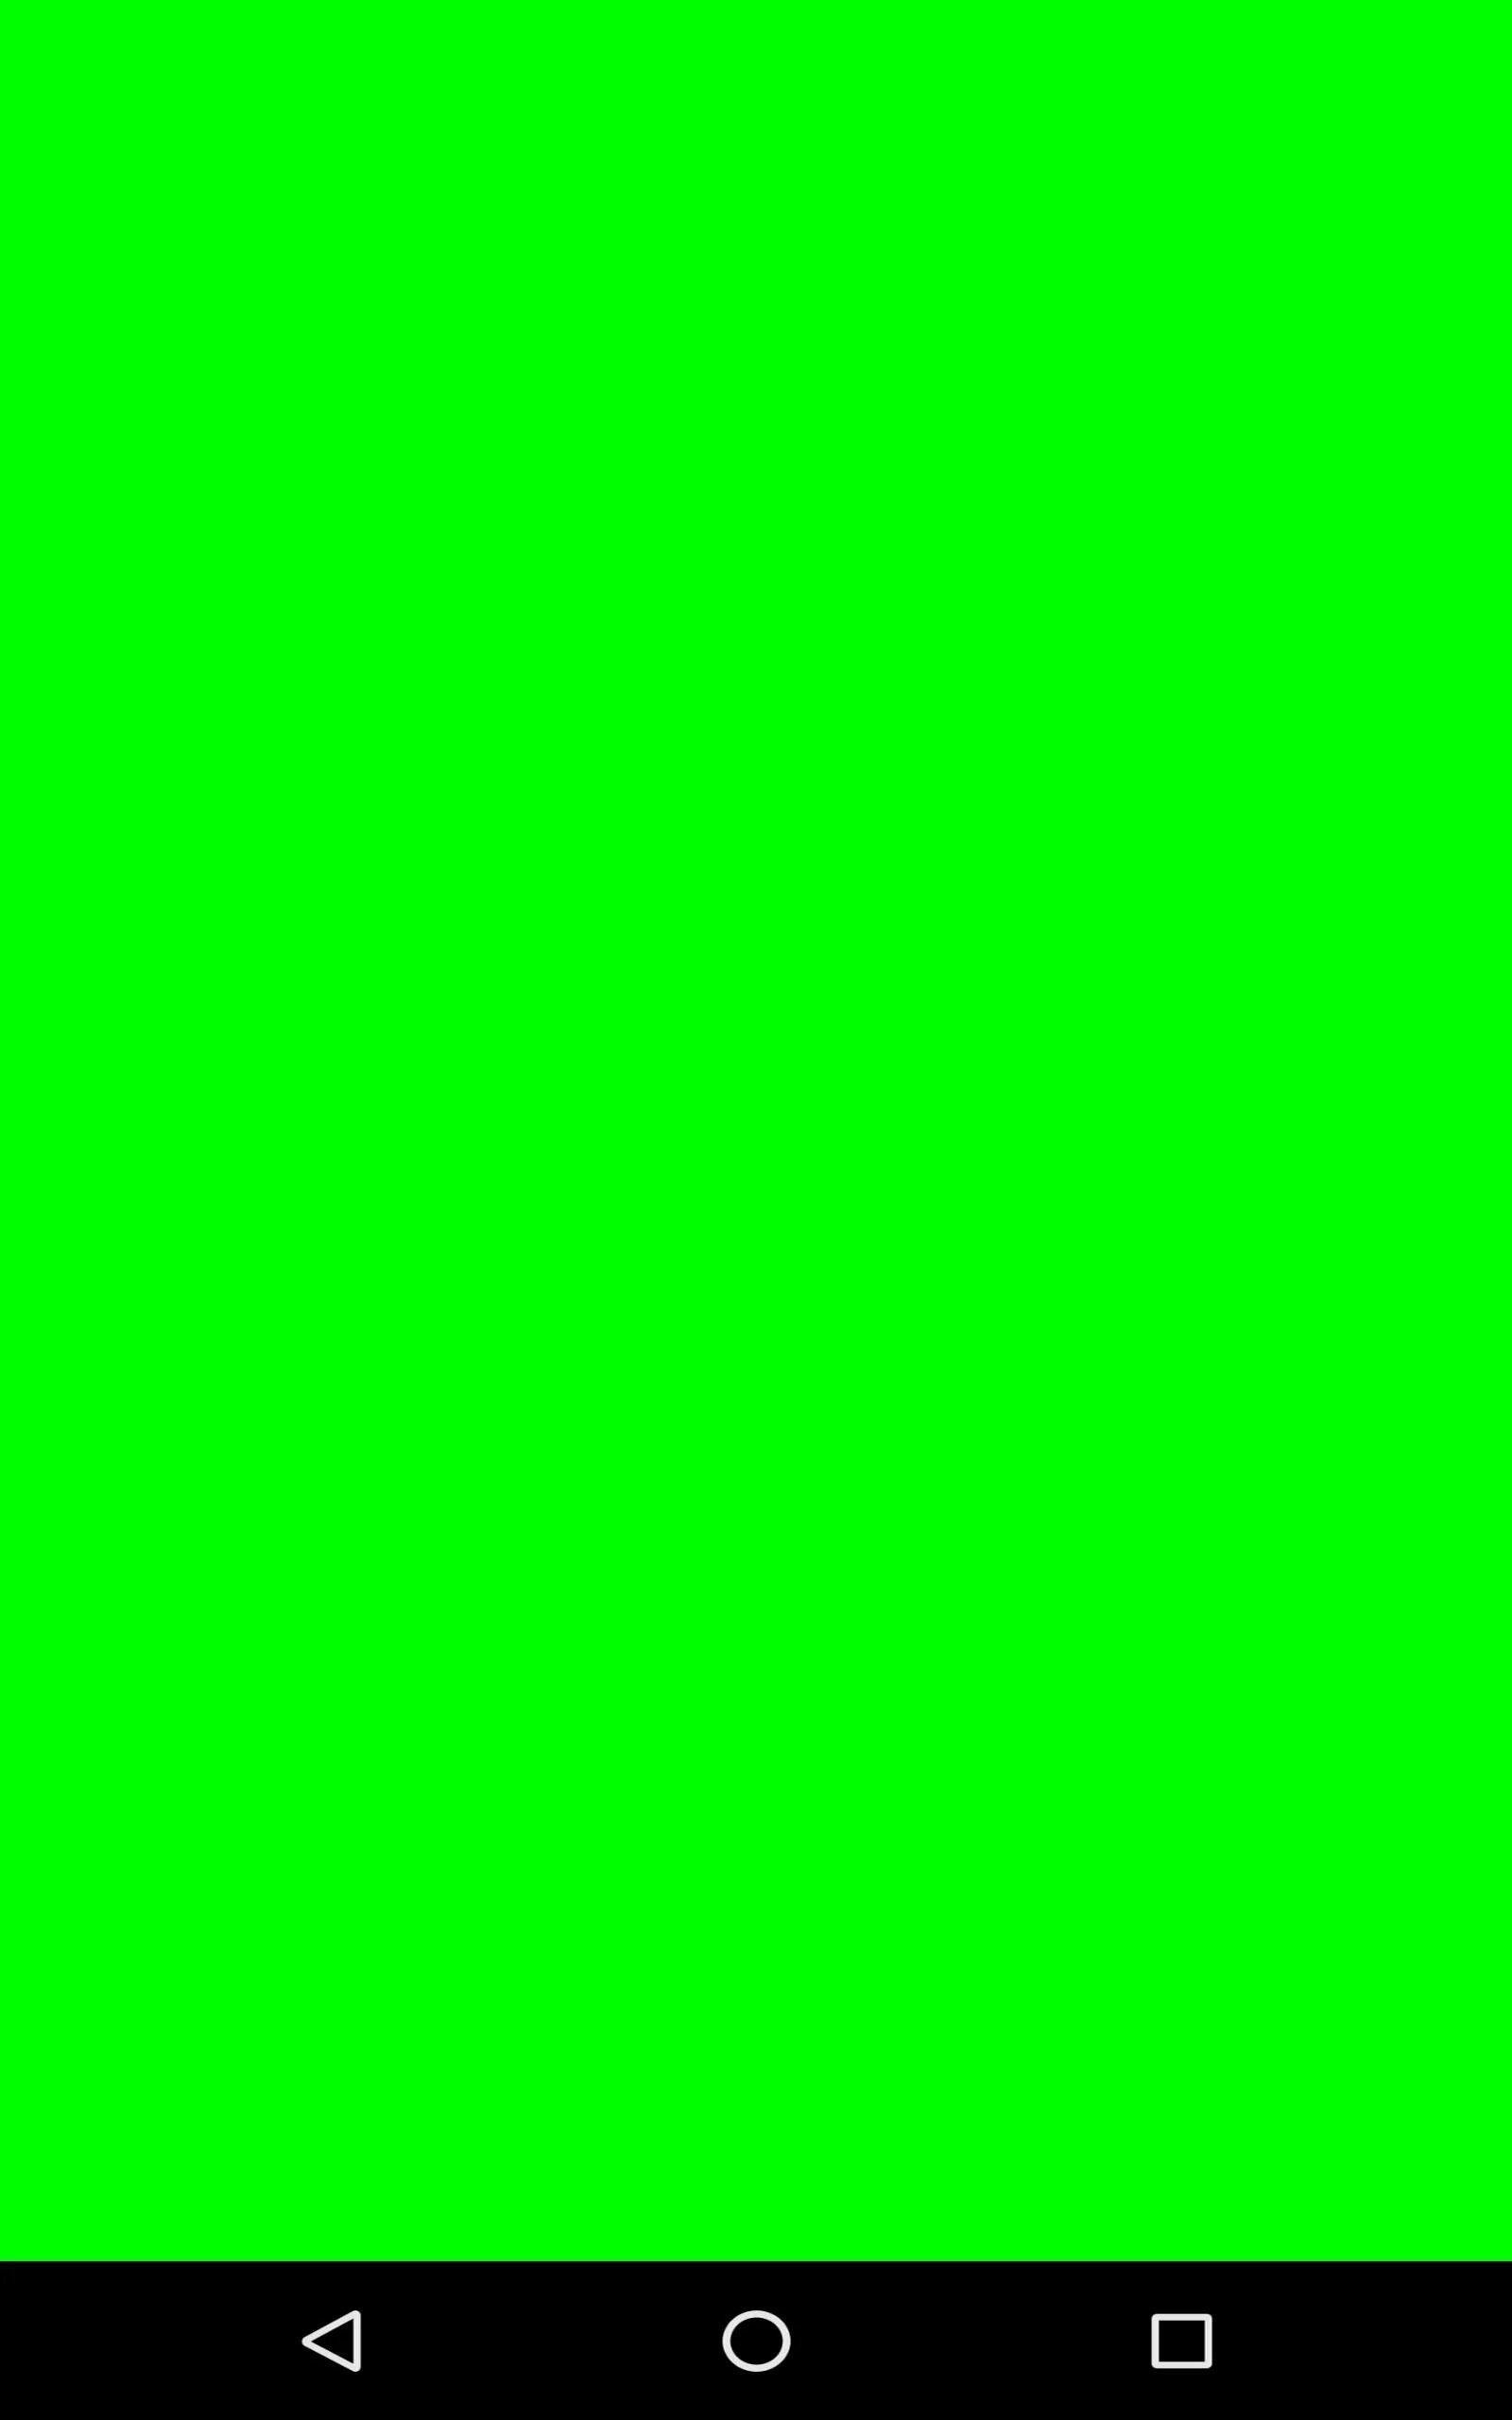 Зеленый экран при включении. Грин скрин хромакей. Хромакей фон Green Screen. Хромакей 4 на 4. Зелёный фон хромакей вертикальный.